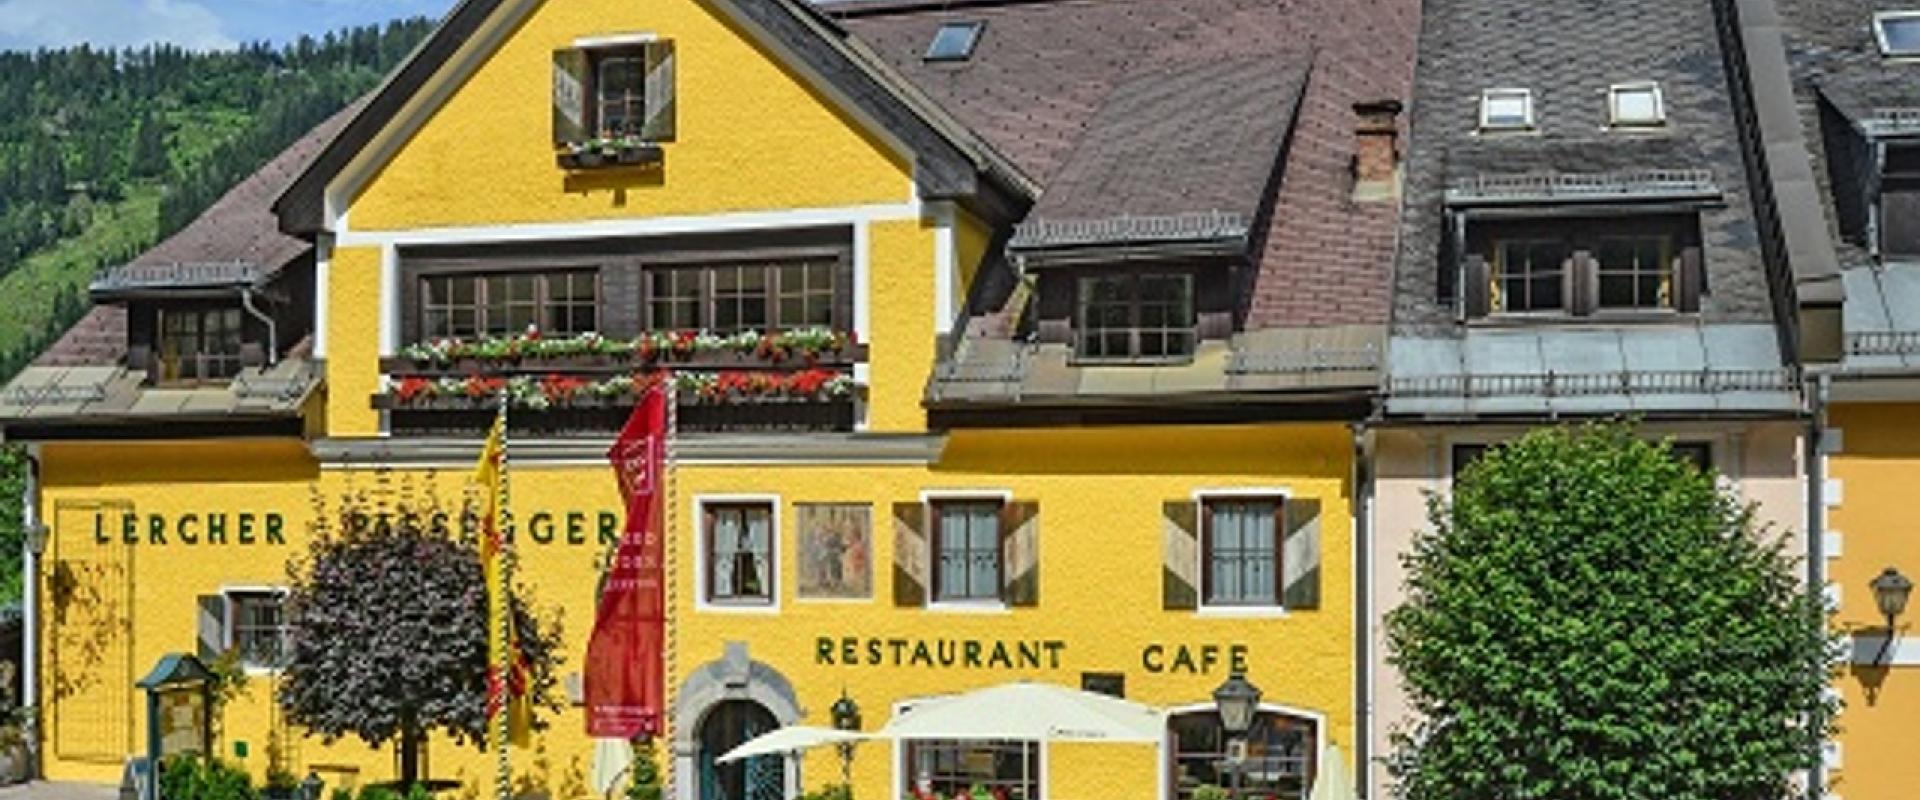 20943 Biker Hotel Lercher in der Steiermark.jpeg